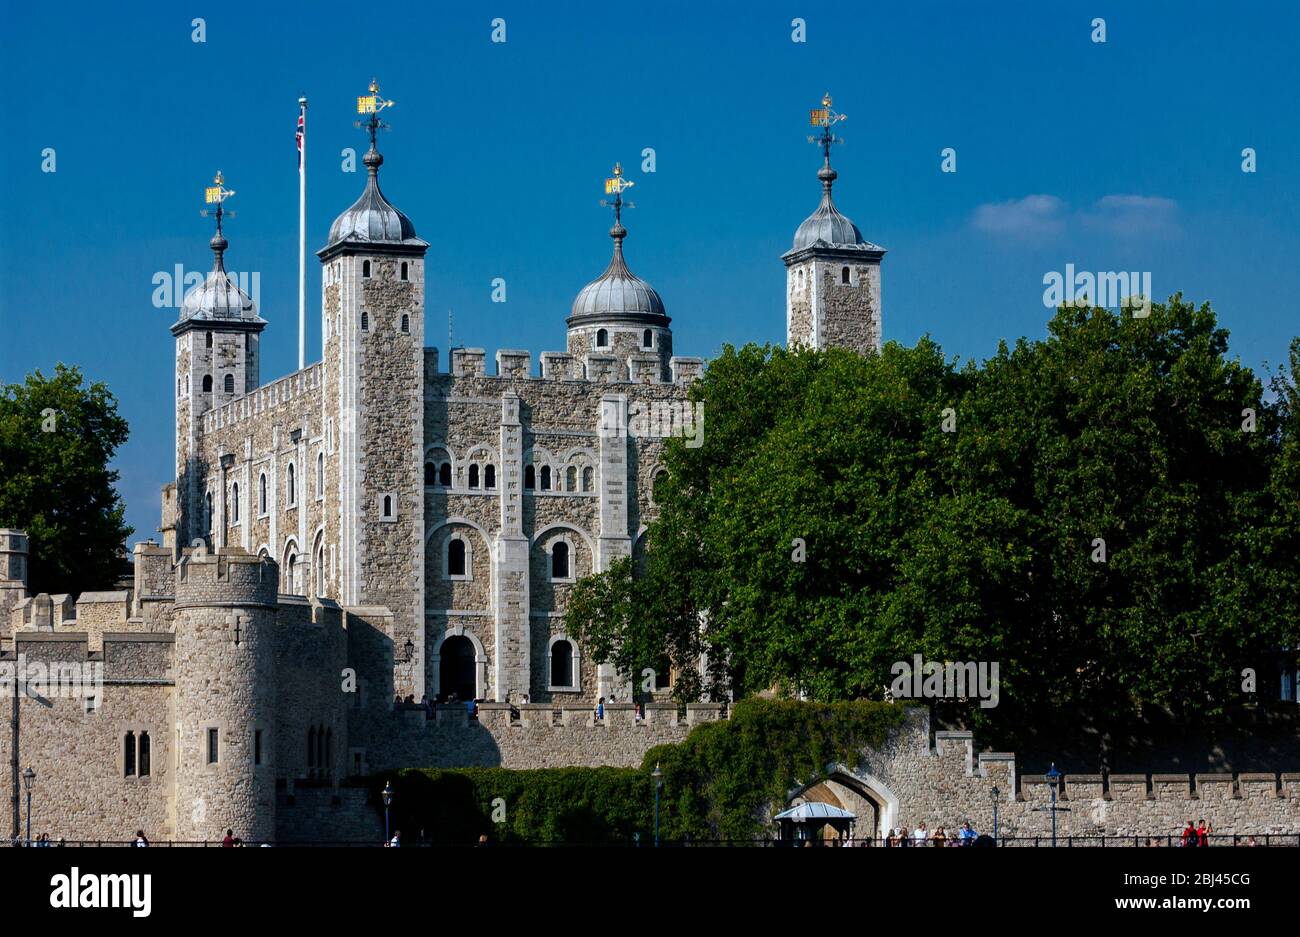 La célèbre Tour Blanche, âgée de près de 1000 ans, et un célèbre donjon du château dans la Tour de Londres (UNESCO), un Palais Royal historique, Londres, Angleterre, Royaume-Uni Banque D'Images